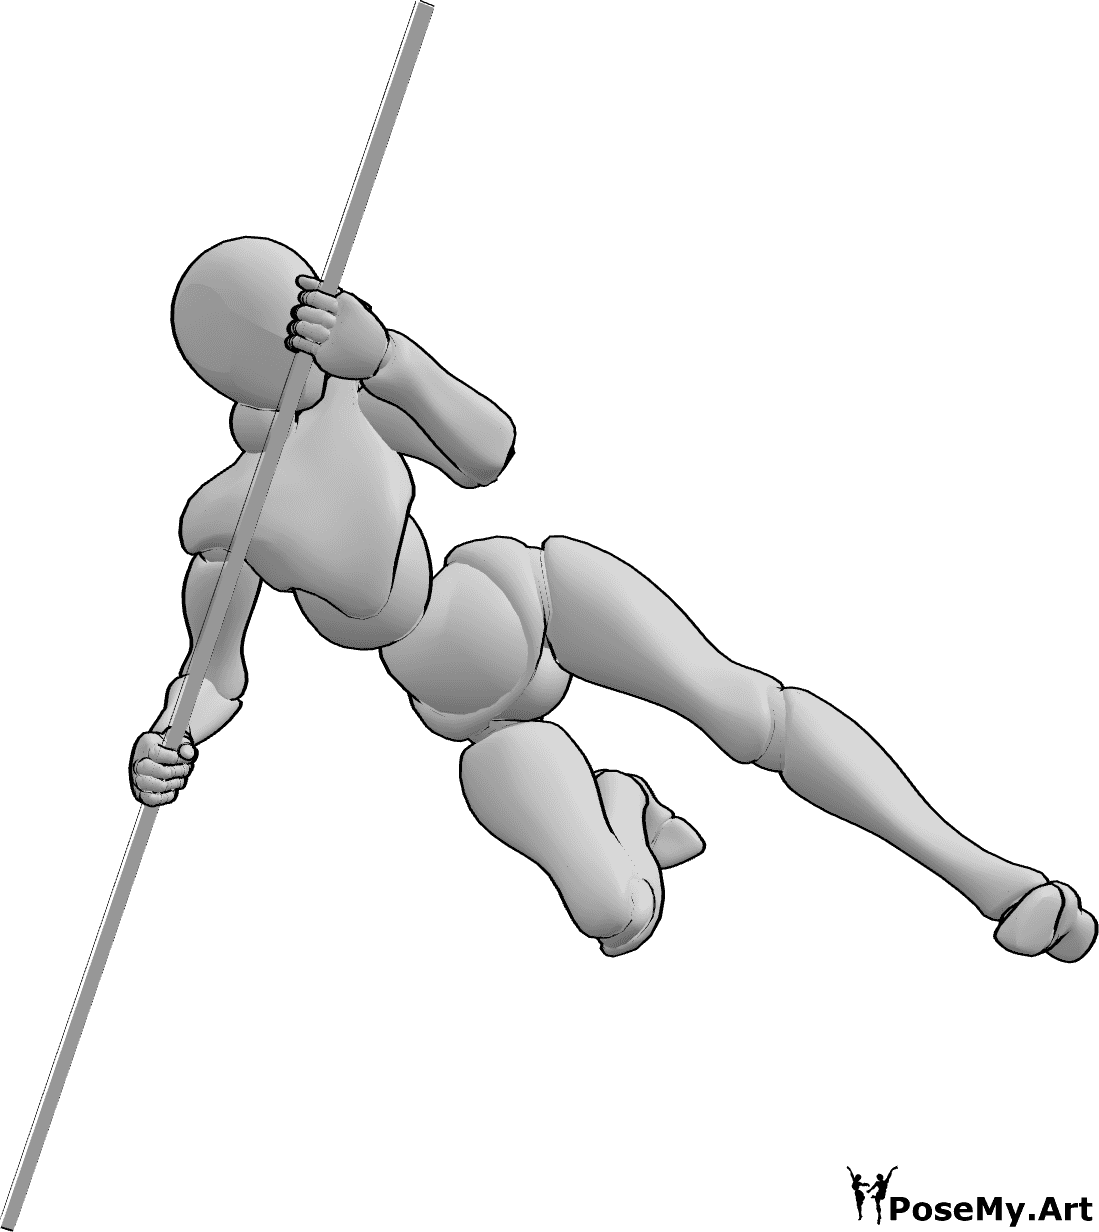 Référence des poses- La femme saute la pose - La femme saute haut et donne des coups de pied en s'appuyant sur la pose du bâton.